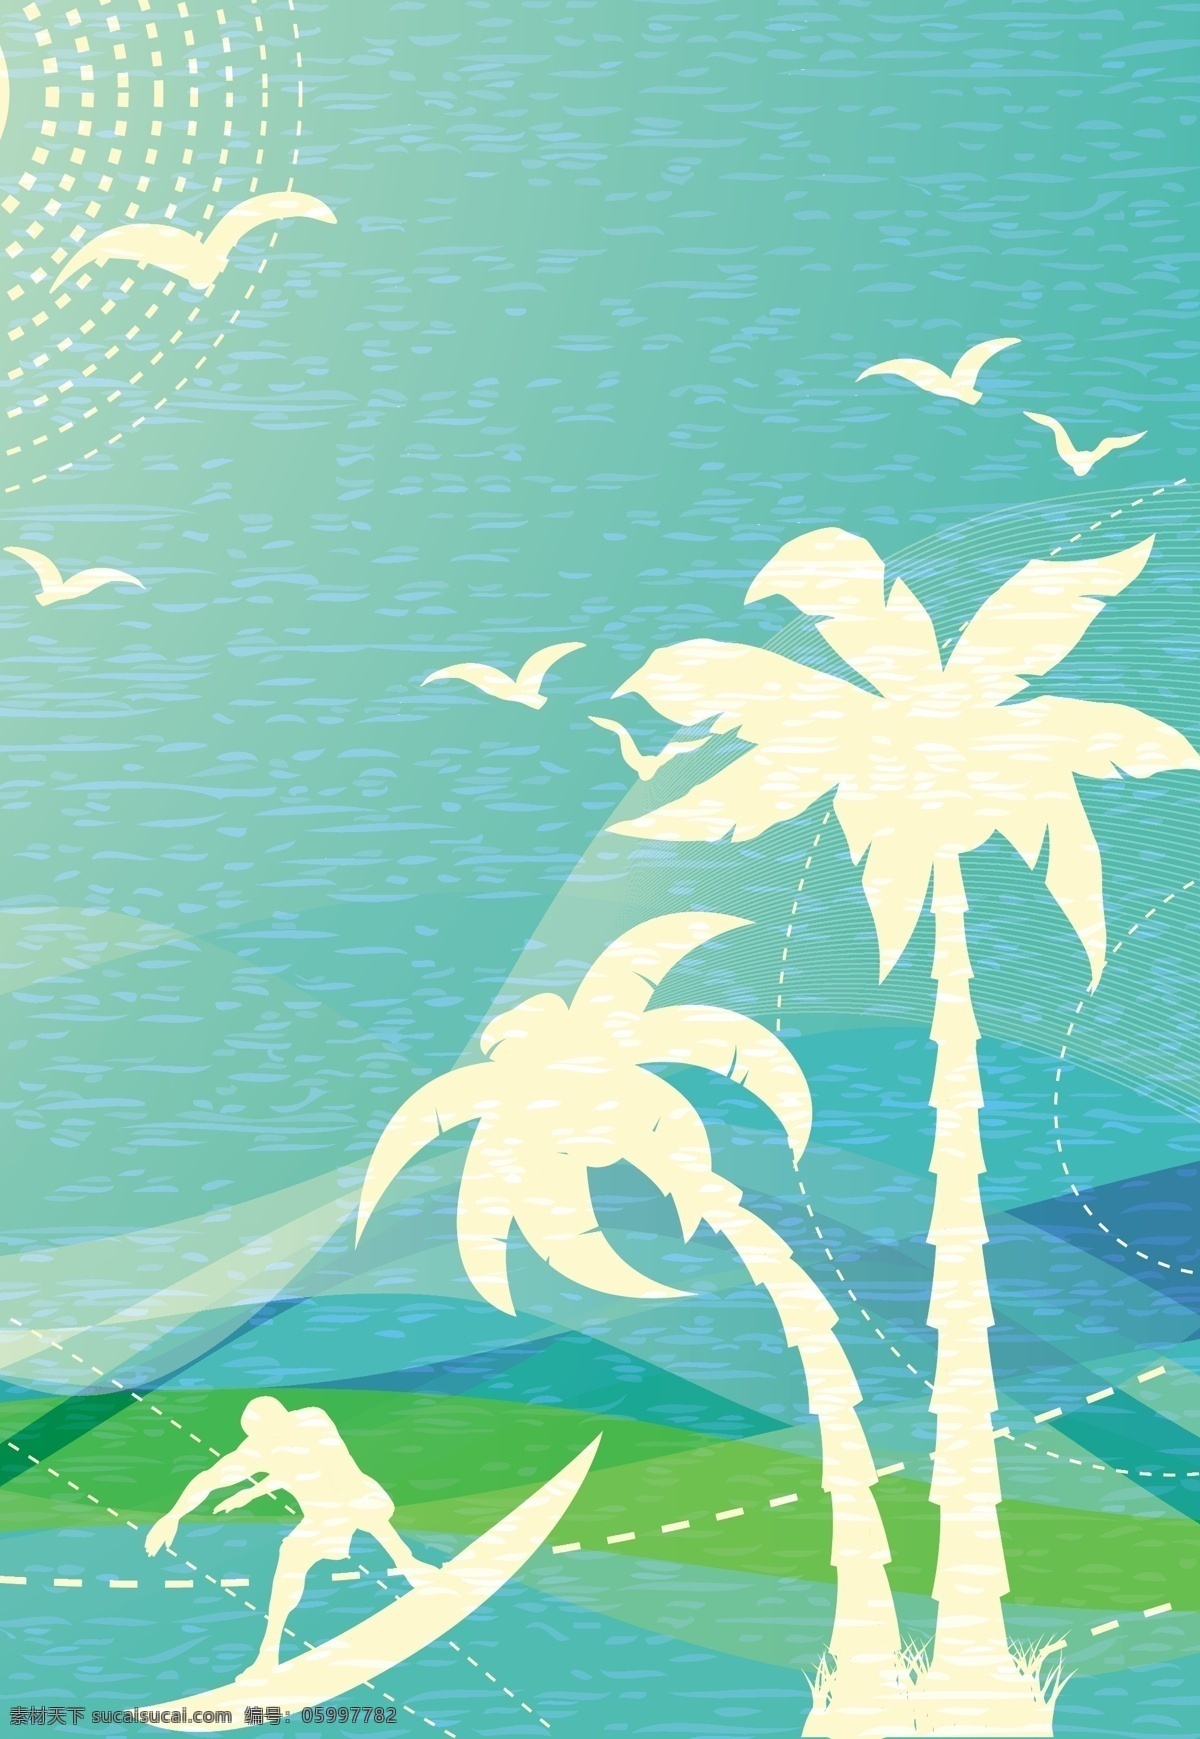 夏日海滩风景 椰树 椰树插画 夏日主题插画 自然风光 空间环境 矢量素材 青色 天蓝色